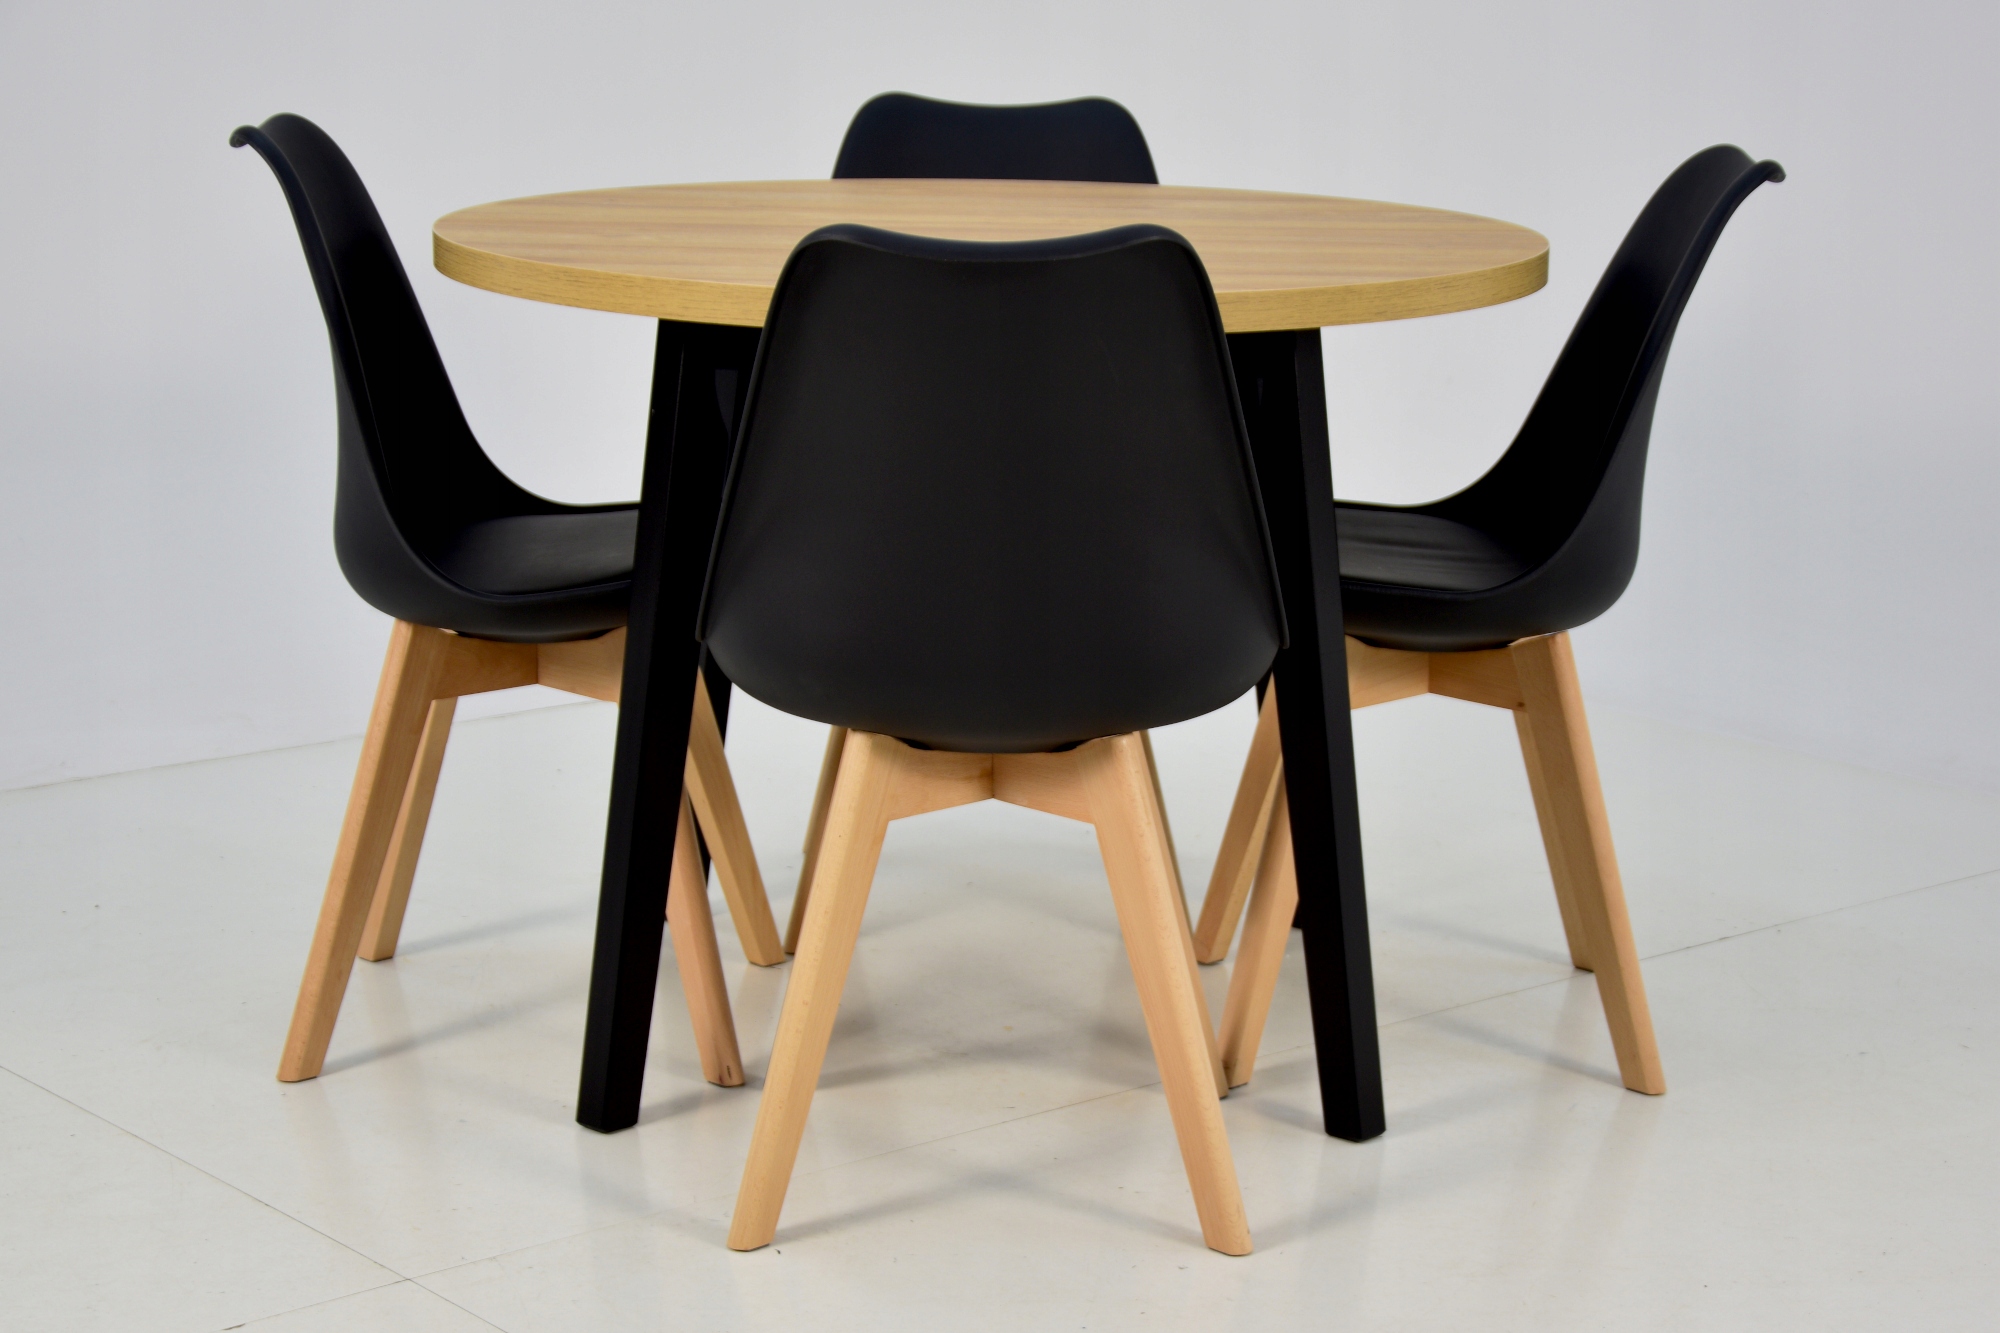 4 скандинавські стільці + круглий стіл 100 см. Матеріал дерево